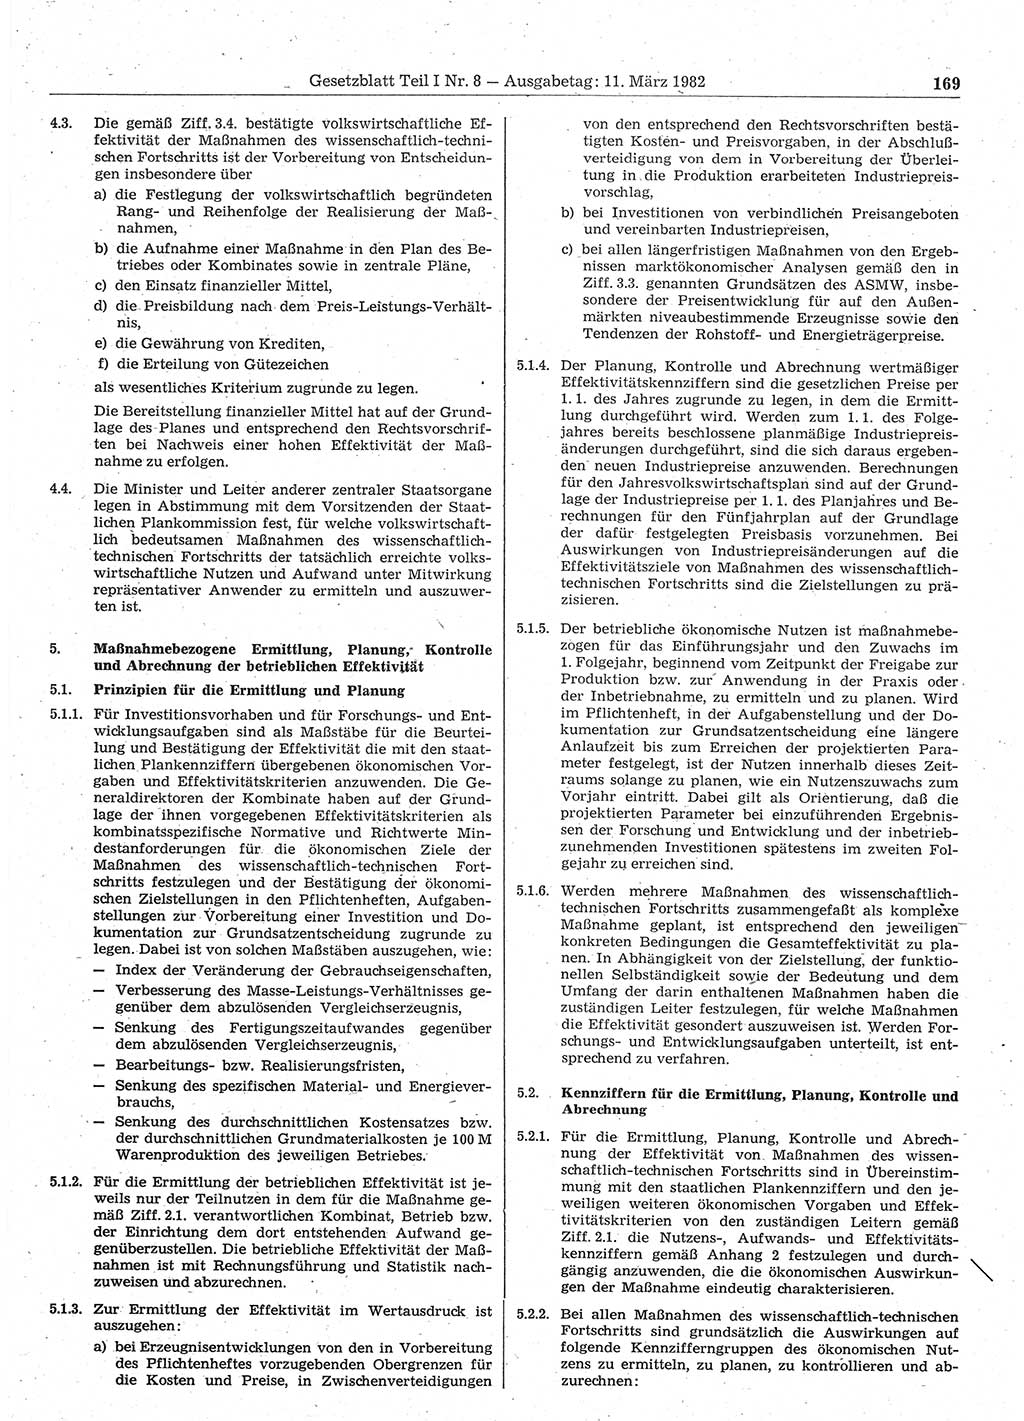 Gesetzblatt (GBl.) der Deutschen Demokratischen Republik (DDR) Teil Ⅰ 1982, Seite 169 (GBl. DDR Ⅰ 1982, S. 169)